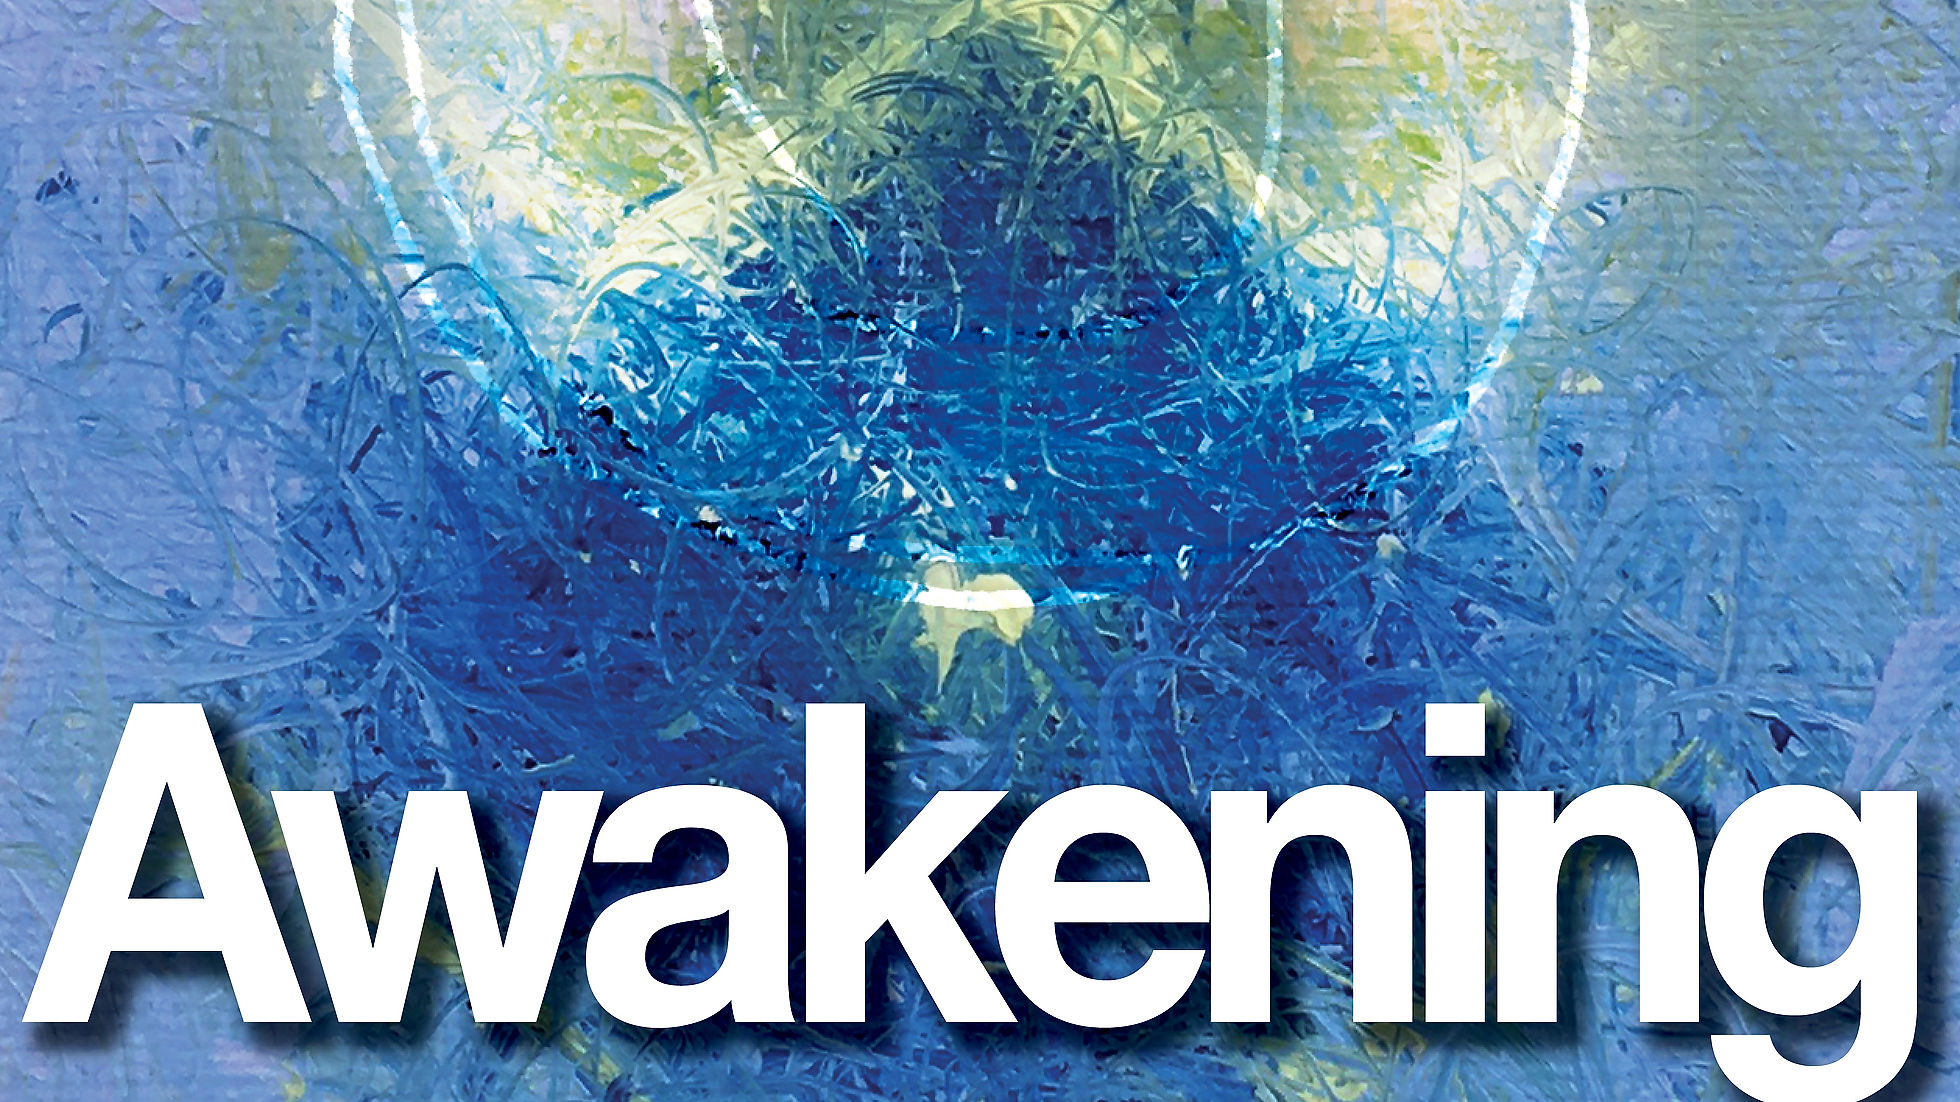 Awakening - About DNA